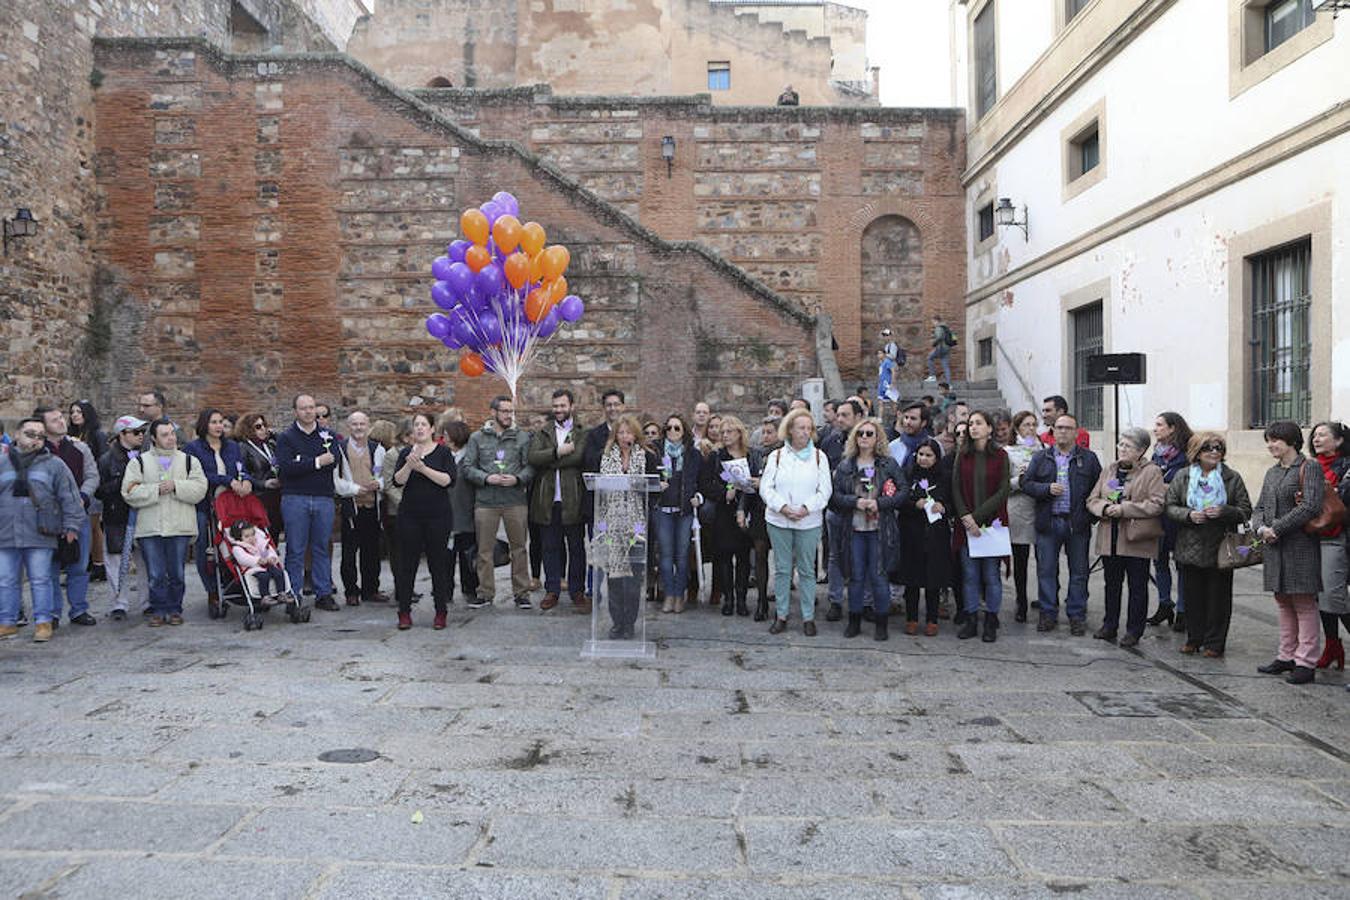 Acto con suelta de globos junto al Ayuntamiento de Cáceres.